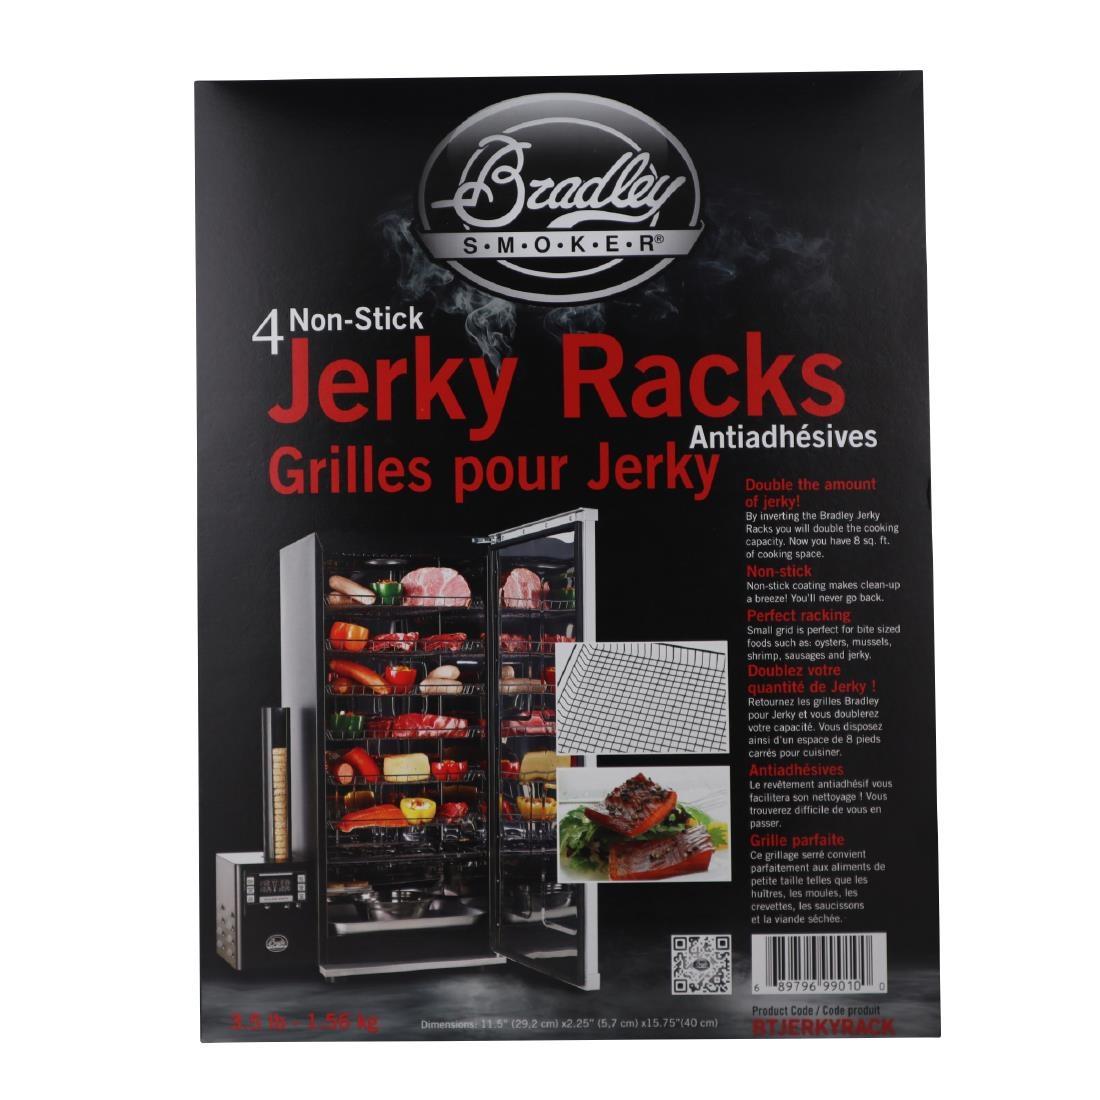 Bradley Smoker Non Stick Jerky Racks (Pack of 4) - FE664  - 2